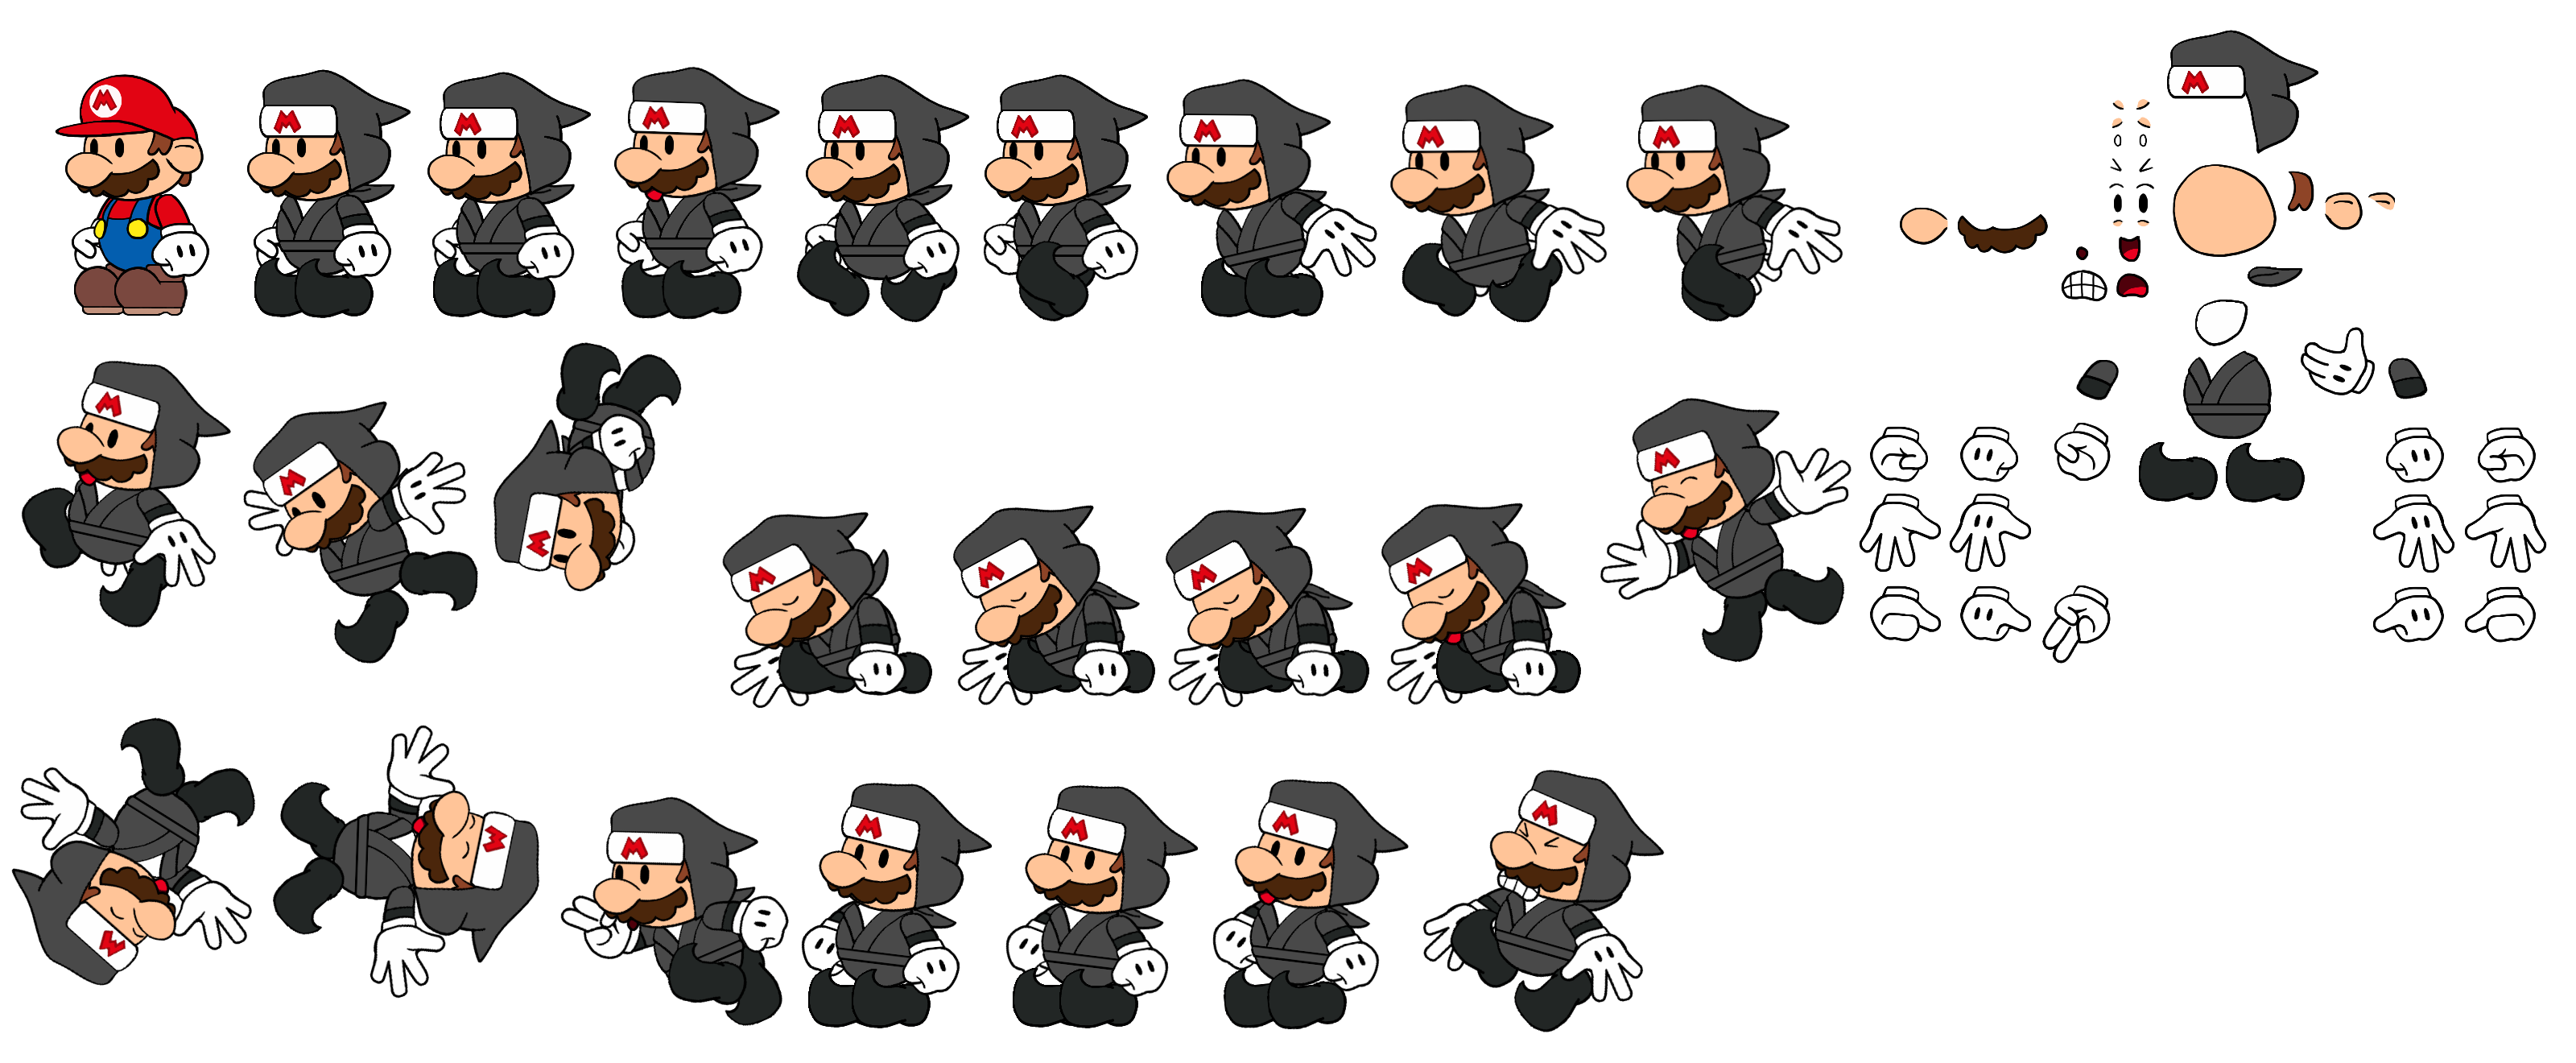 Mario (TOK Ninja Outfit) (Paper Mario-Style)